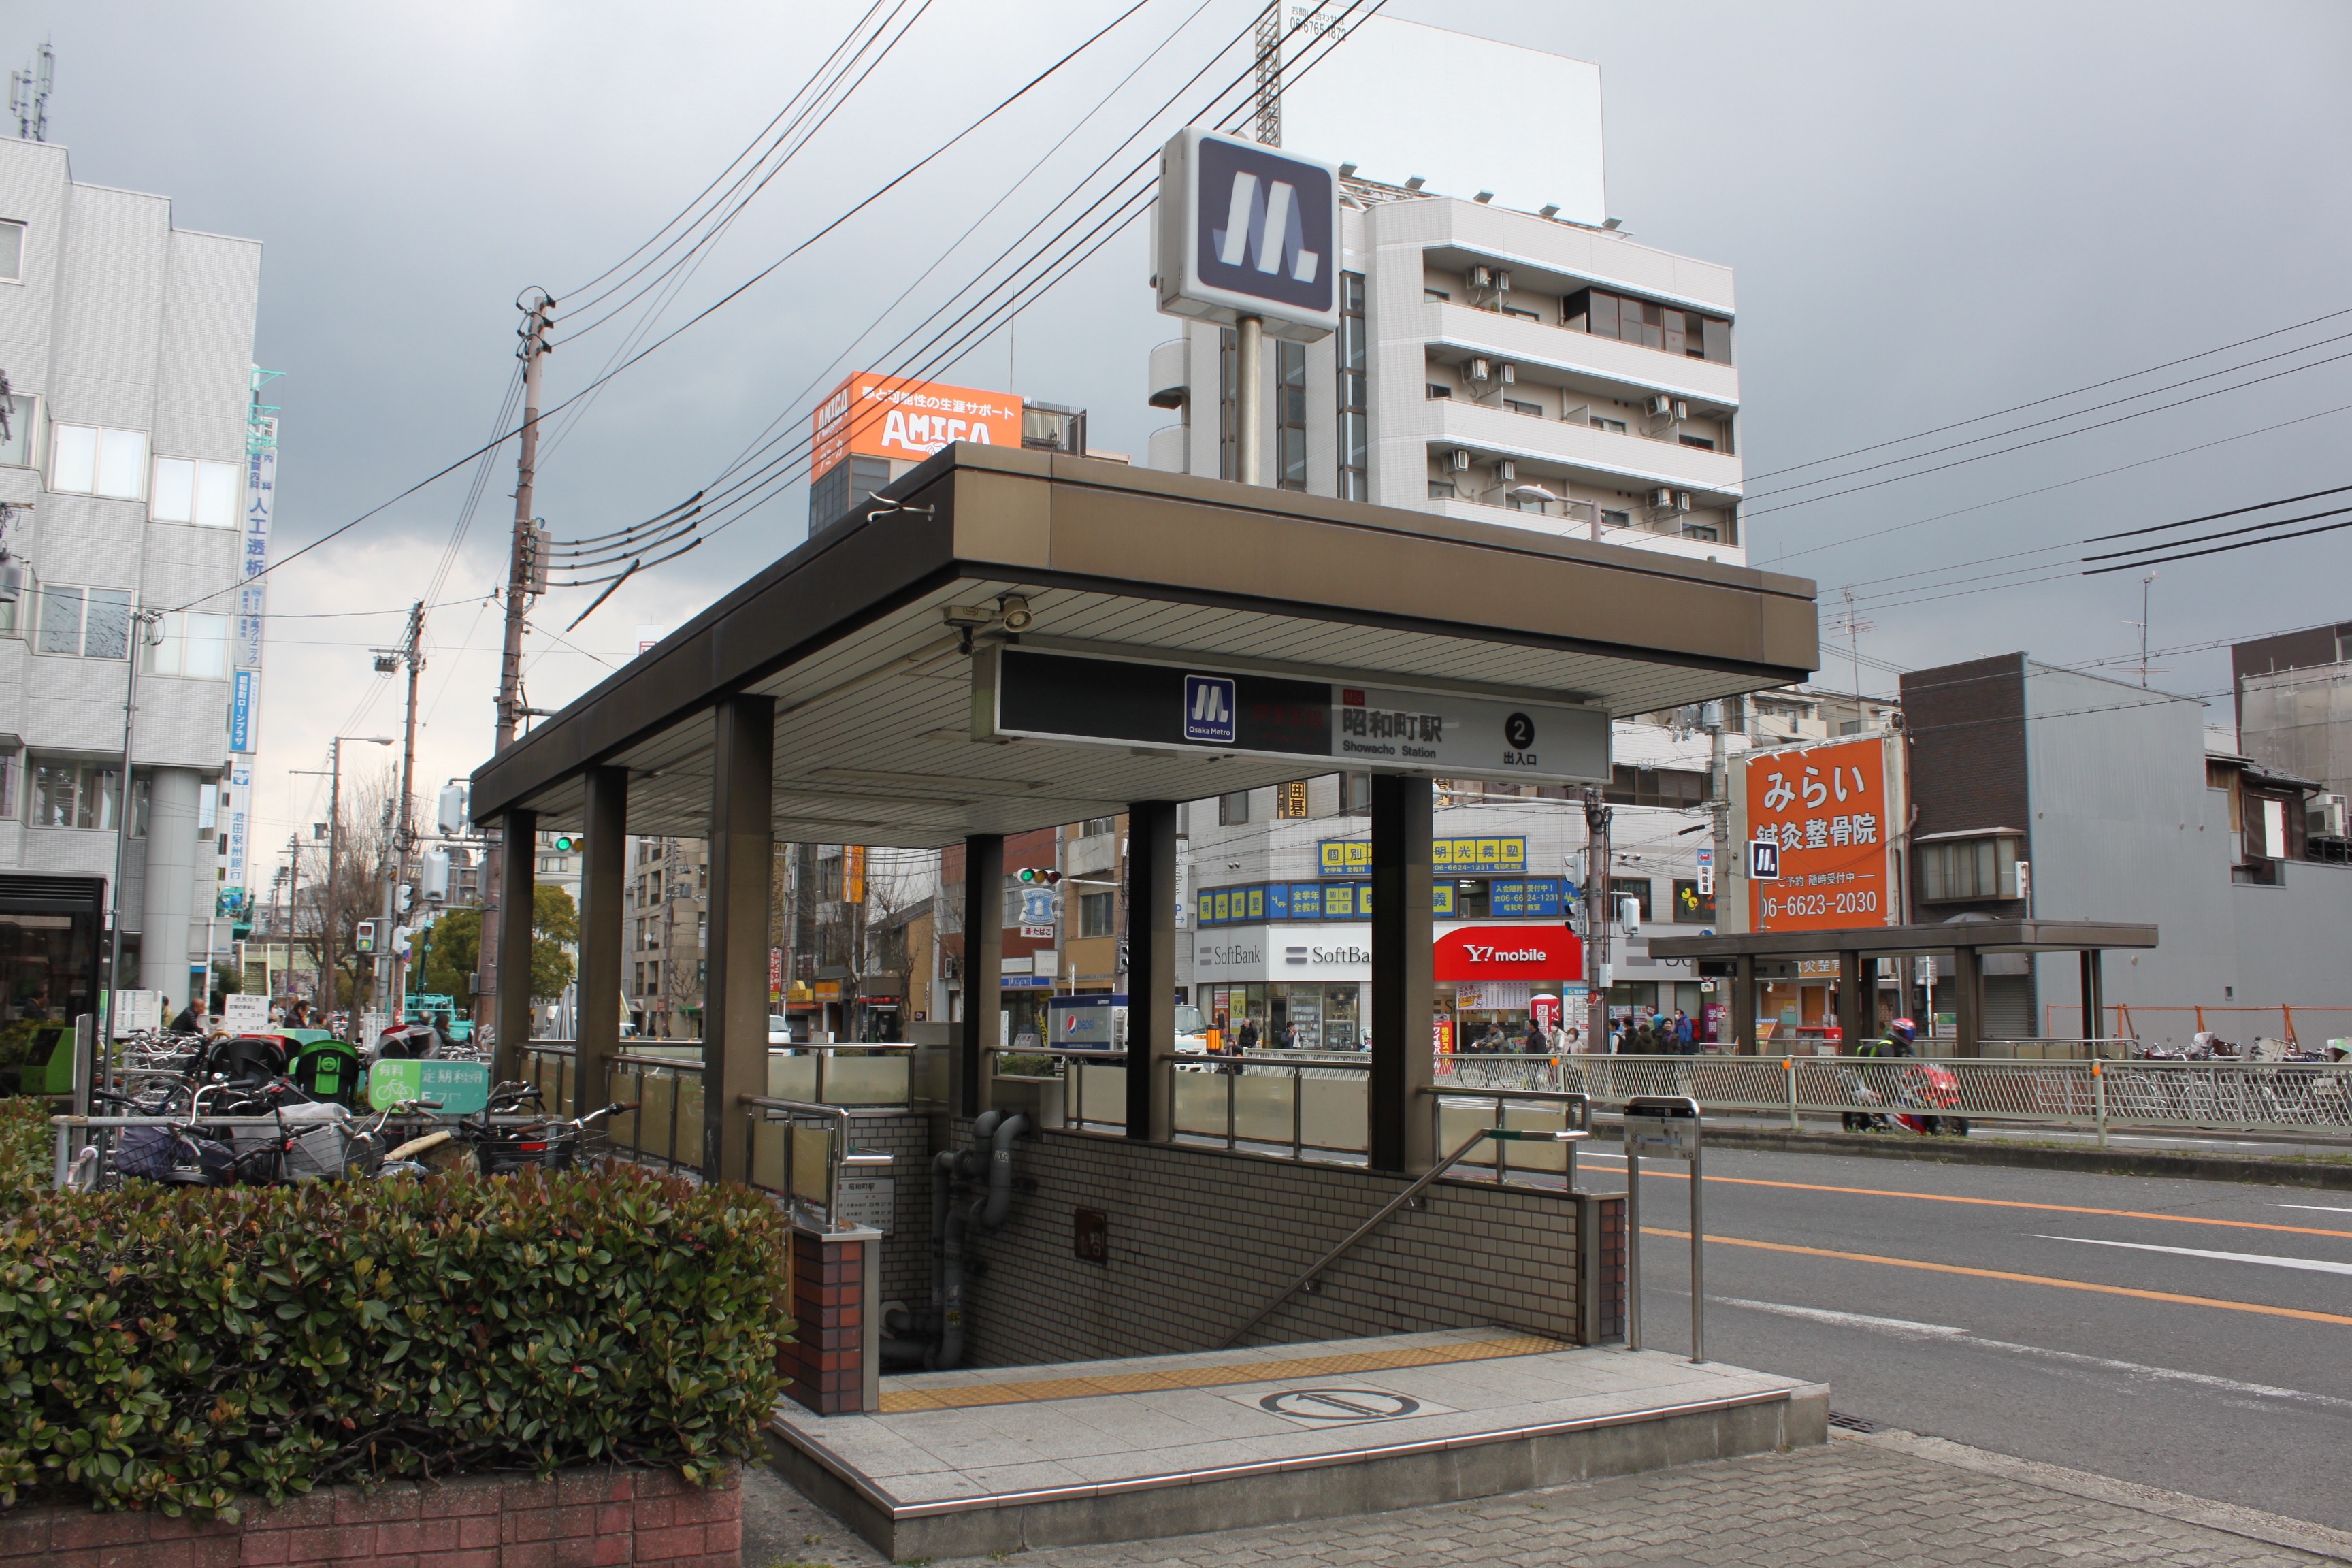 OsakaMetro御堂筋線「昭和町」駅 説明写真